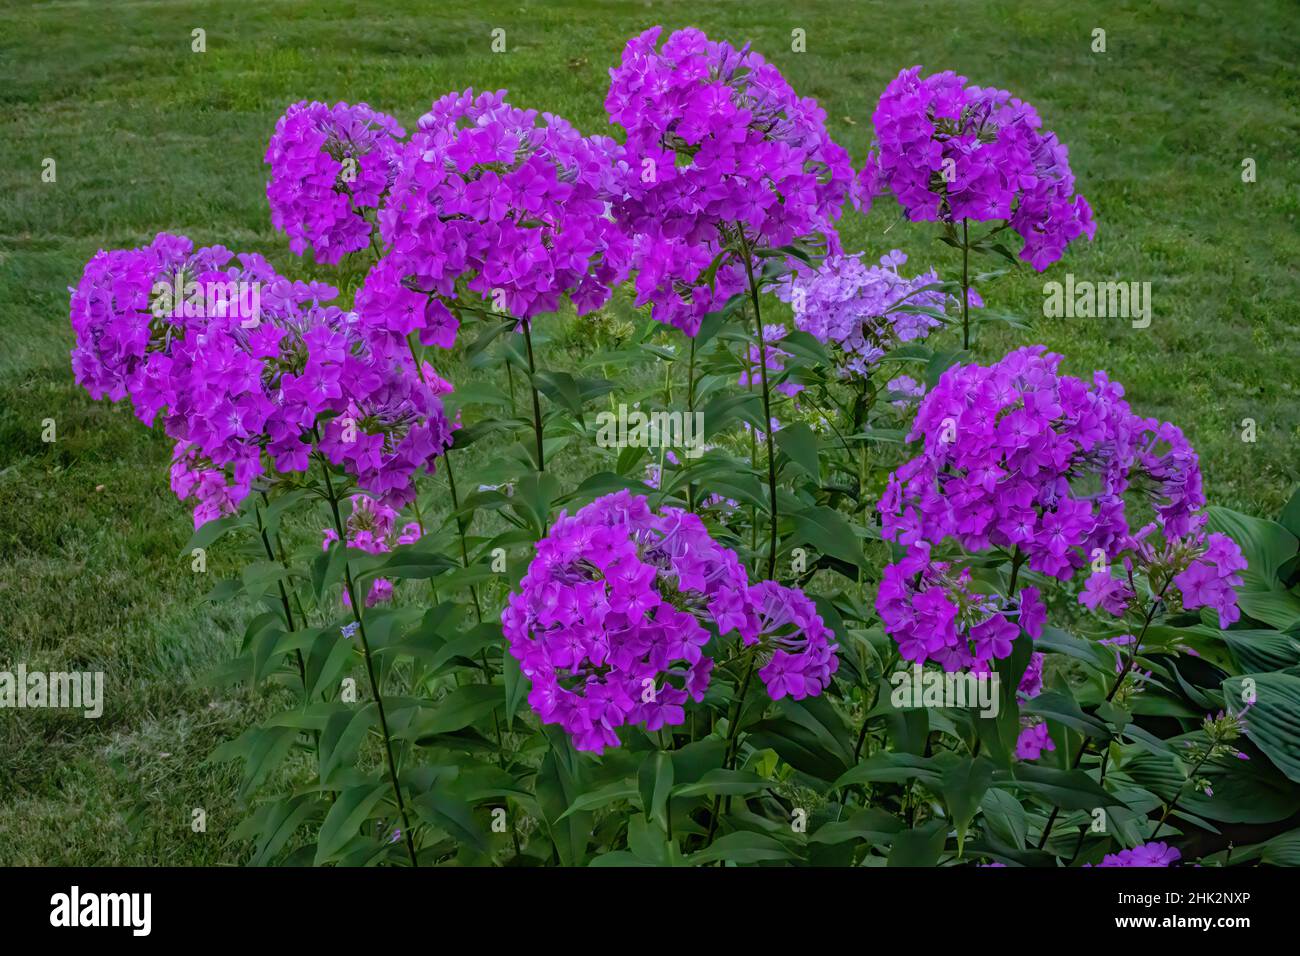 Tall purple phlox flower in a summer garden. Stock Photo